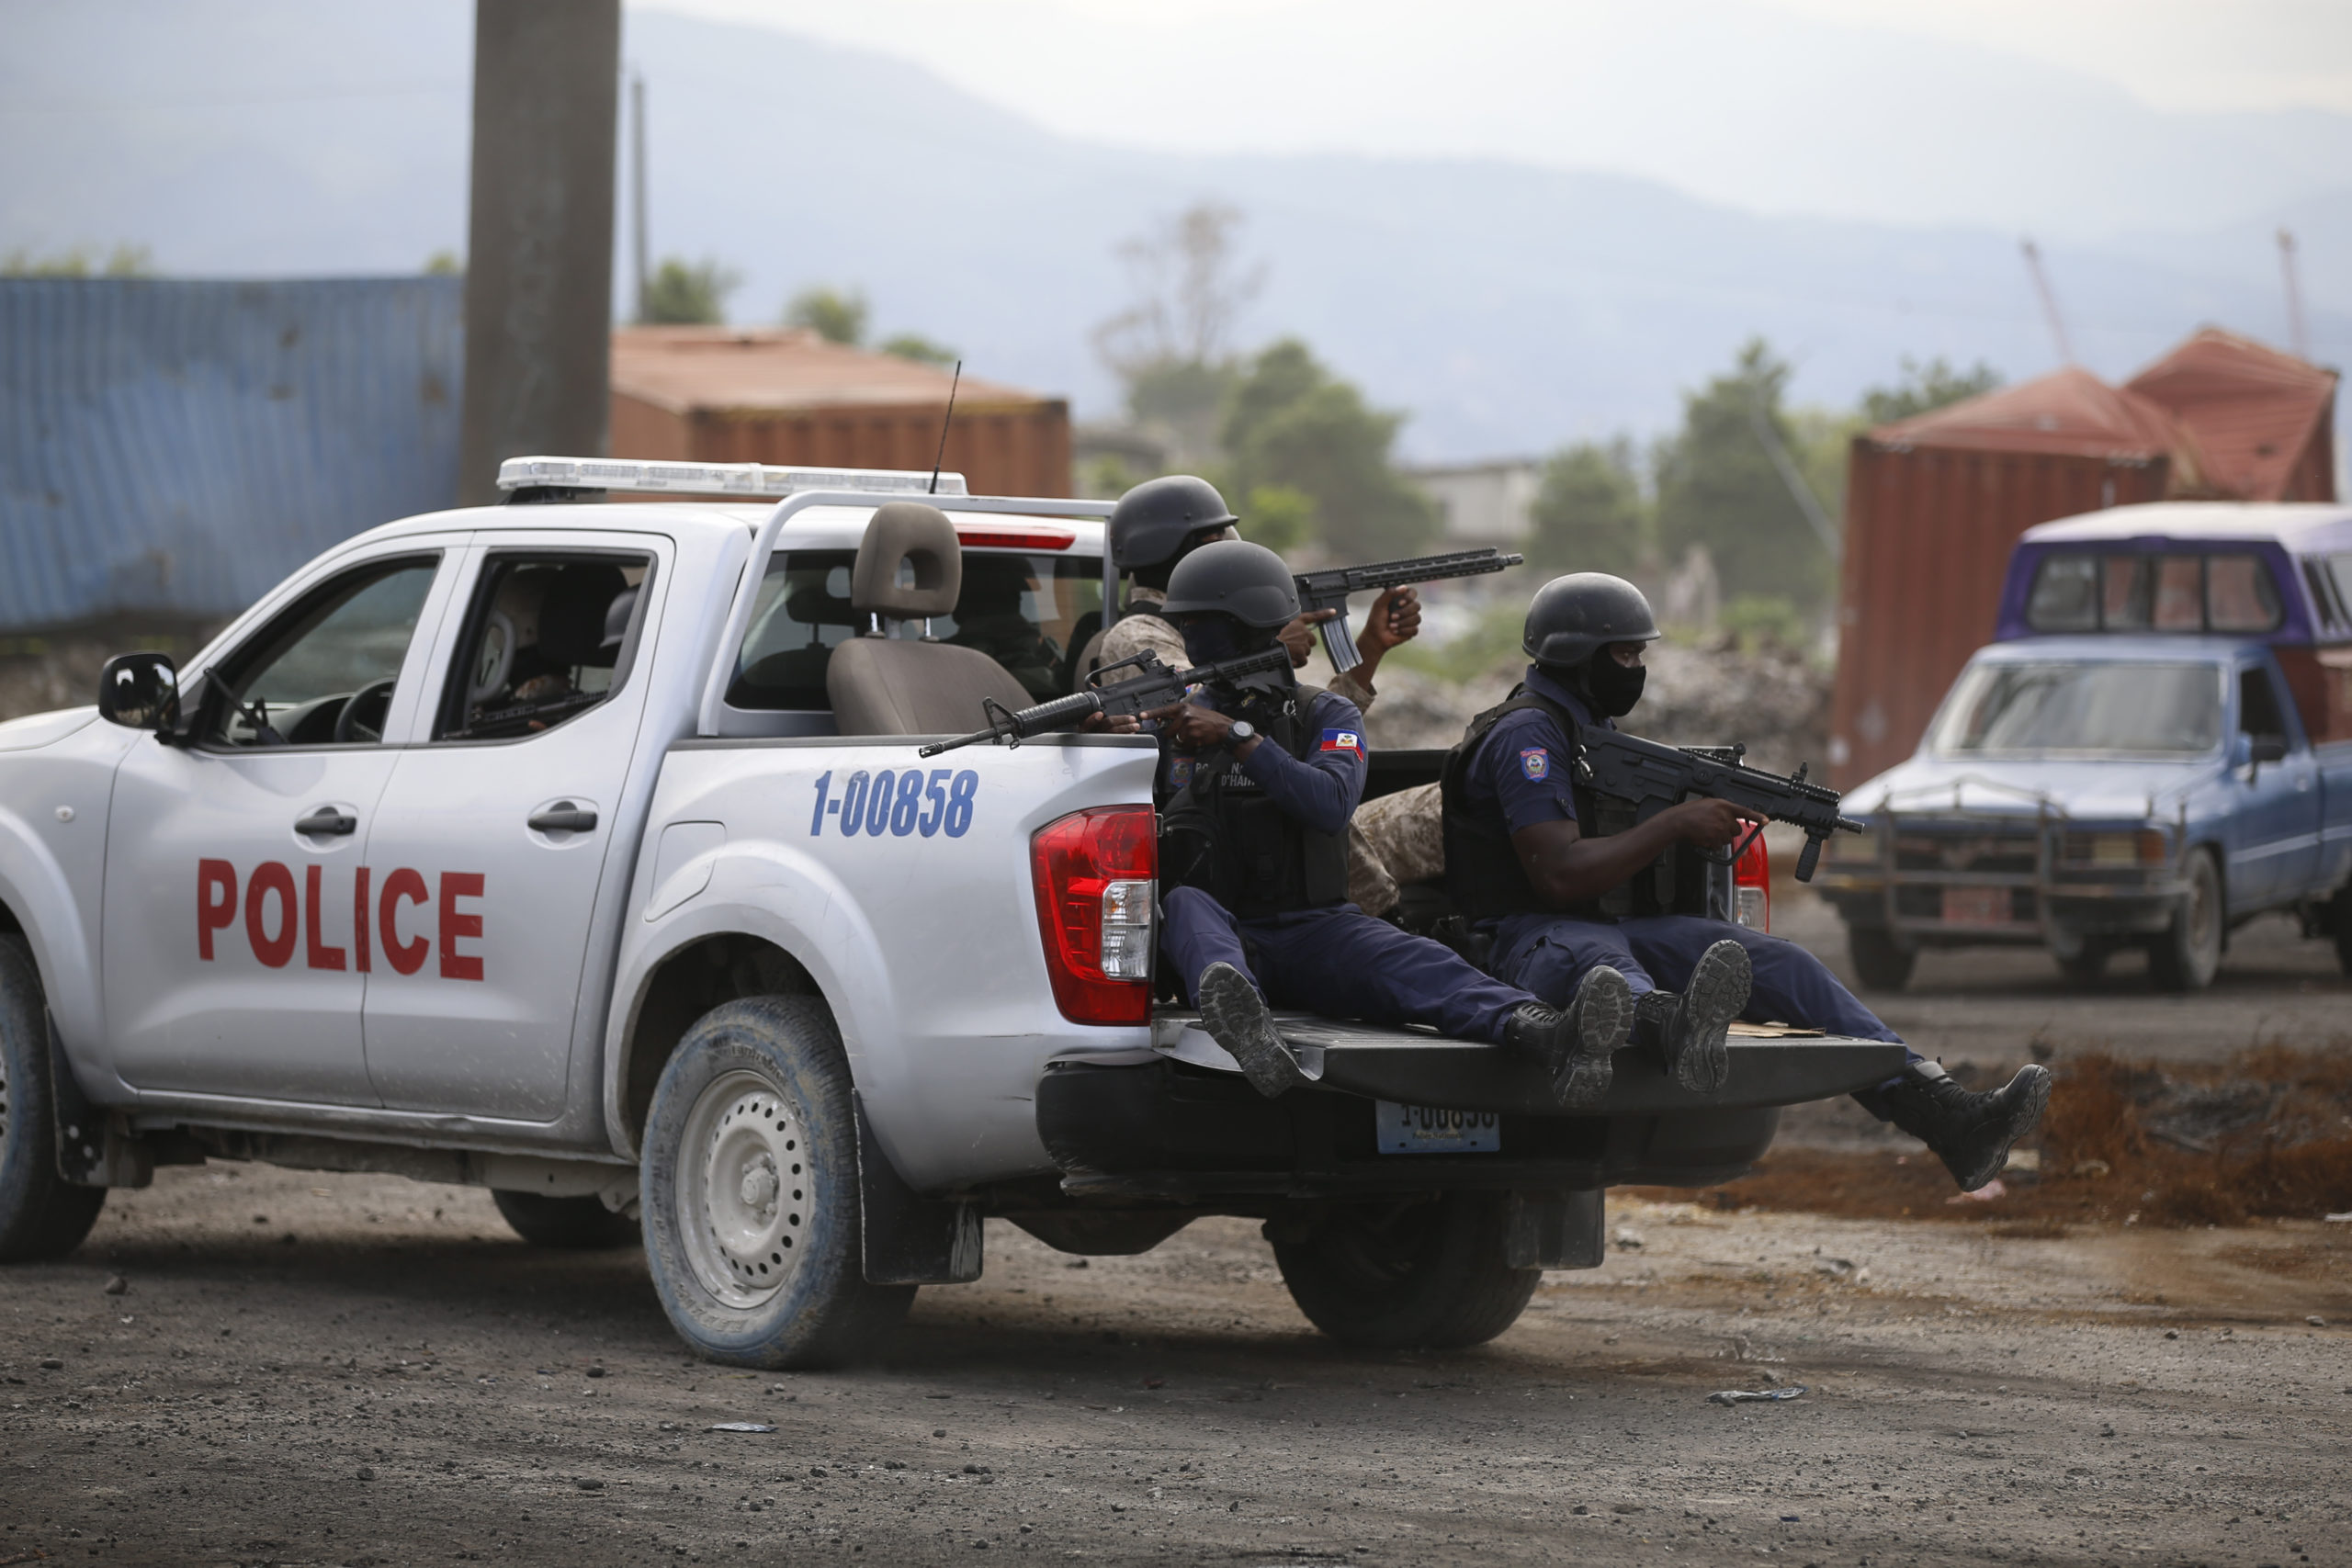 Διεθνή δύναμη κρούσης για να αντιμετωπιστούν οι συμμορίες χρειάζεται η Αϊτή σύμφωνα με τον πρεσβευτή της χώρας στις ΗΠΑ